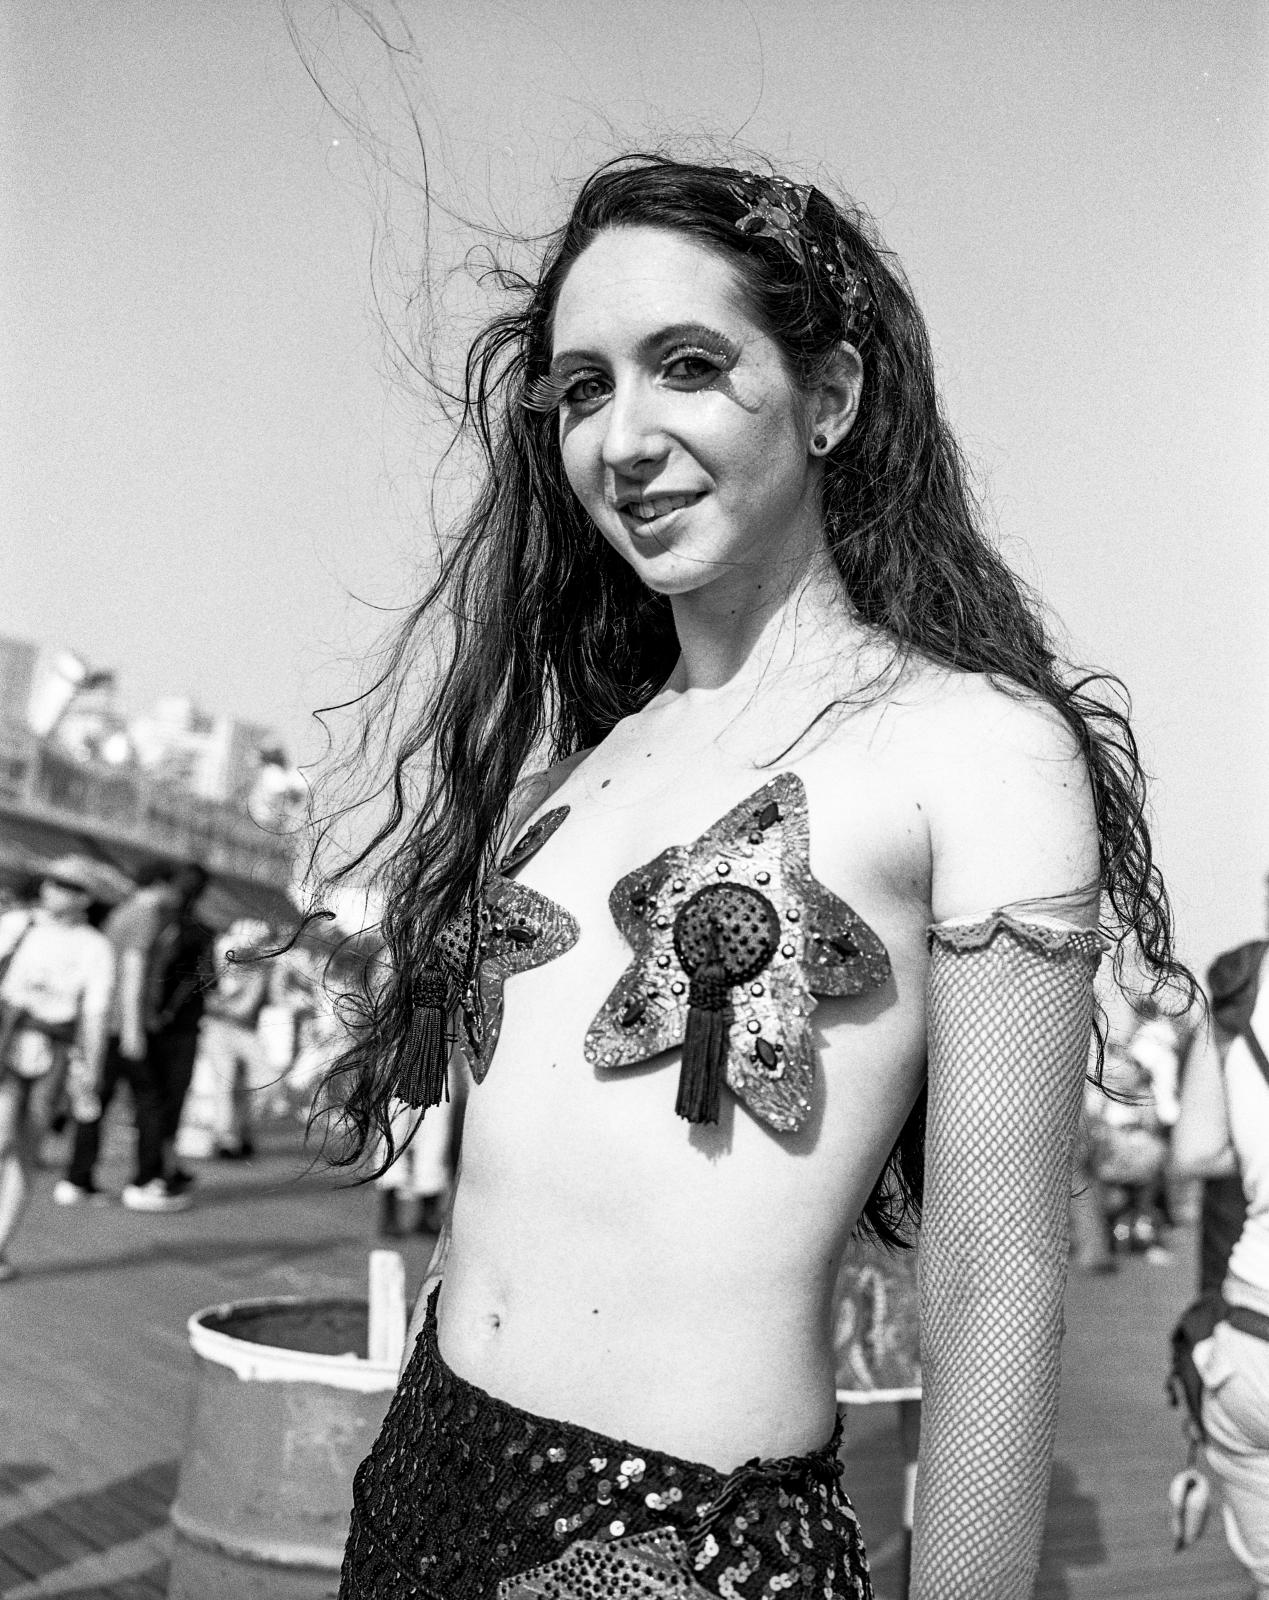 Mermaid Parade at the Summer Solstice